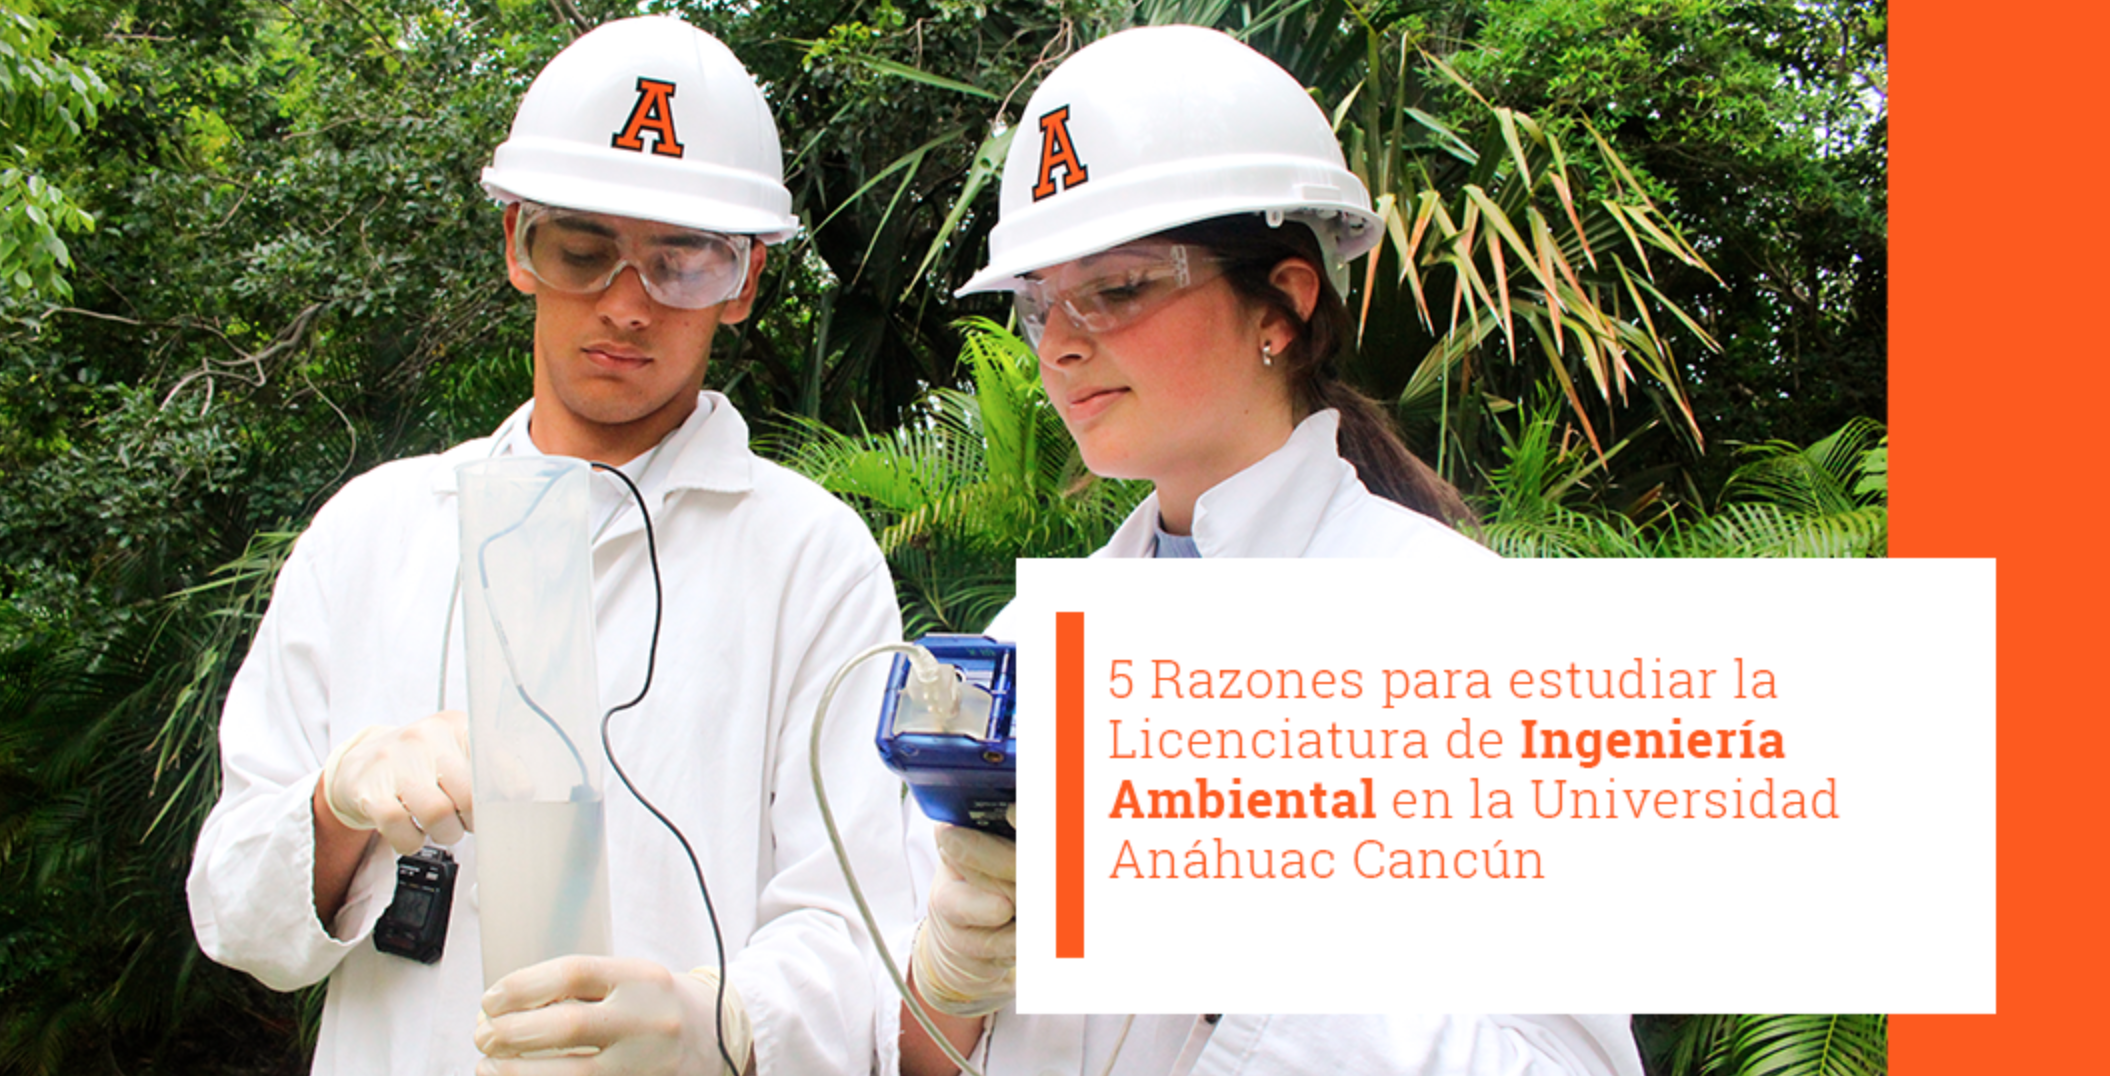 5 Razones para estudiar la Licenciatura de Ingeniería Ambiental en la Universidad Anáhuac Cancún